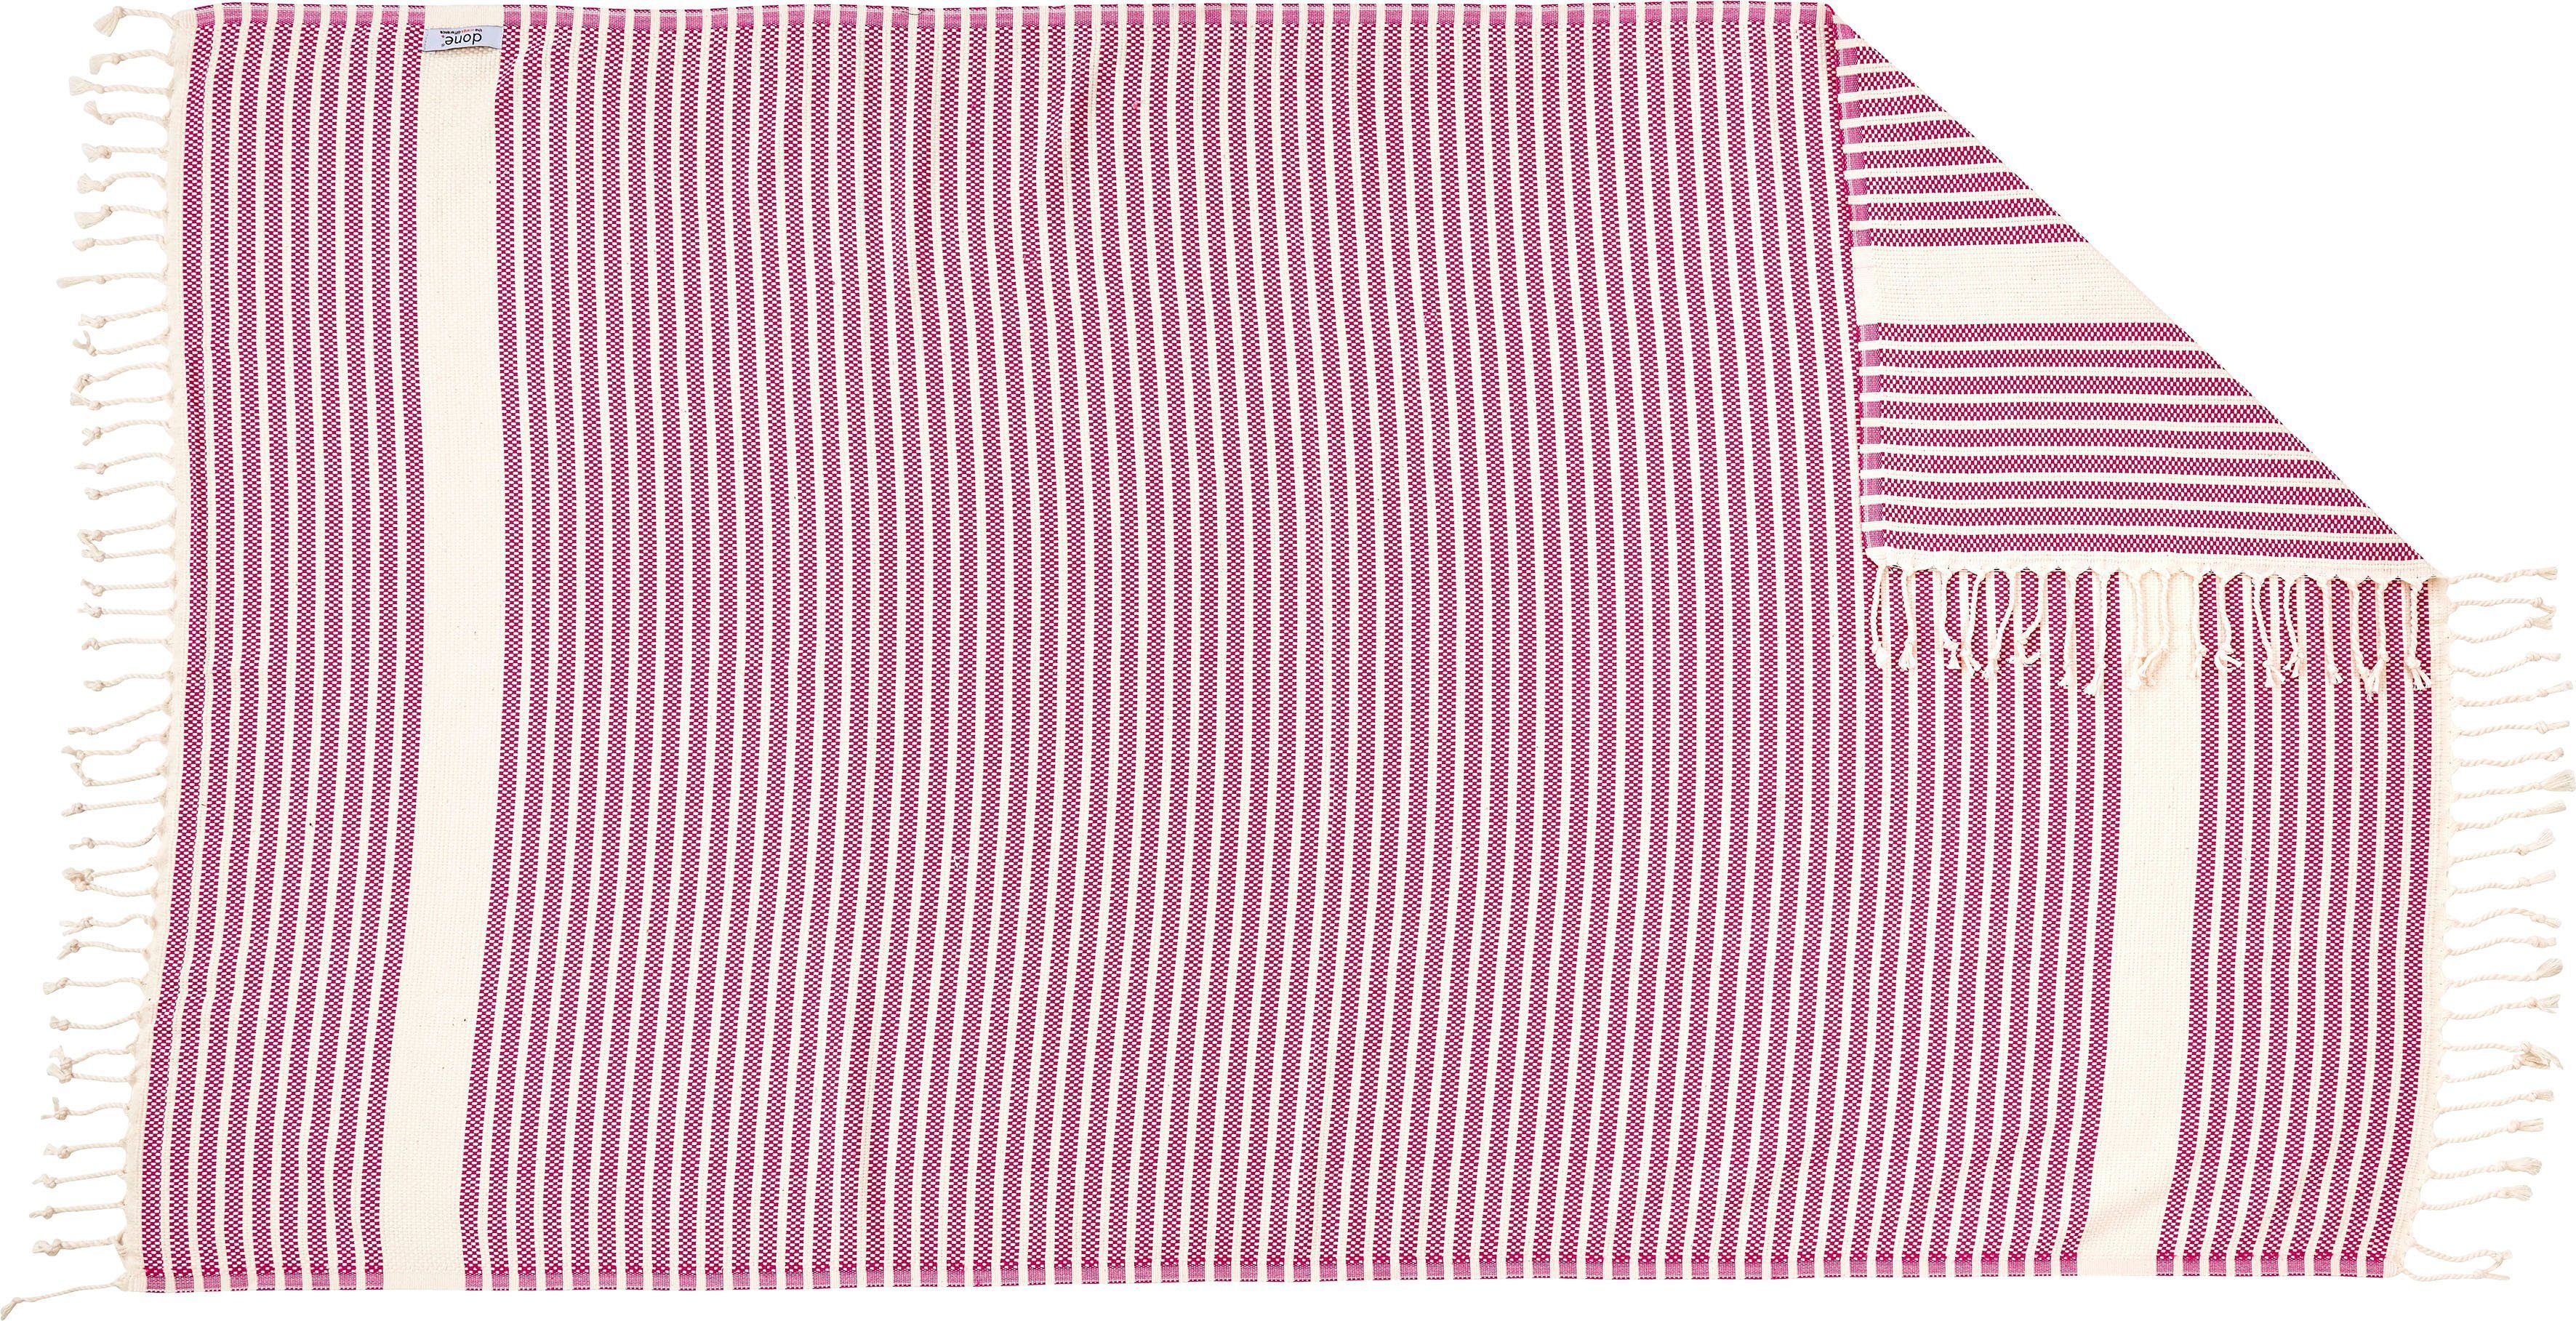 Plaid Lounge Leichtes pink/beige Plaid Fransen mit Stripes, done.®, geknoteten